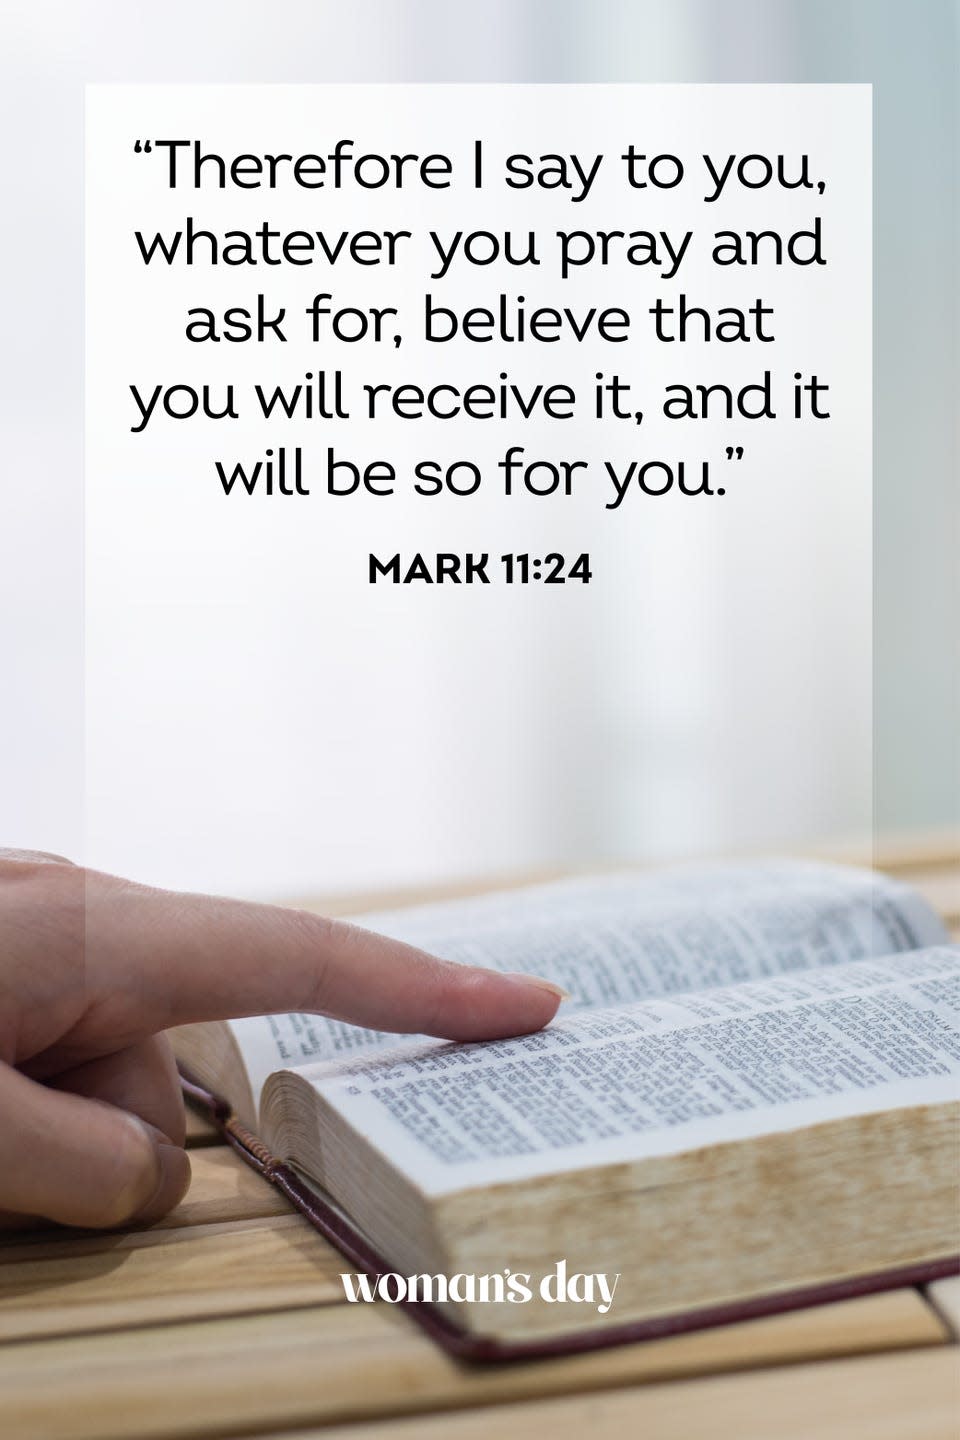 1) Mark 11:24